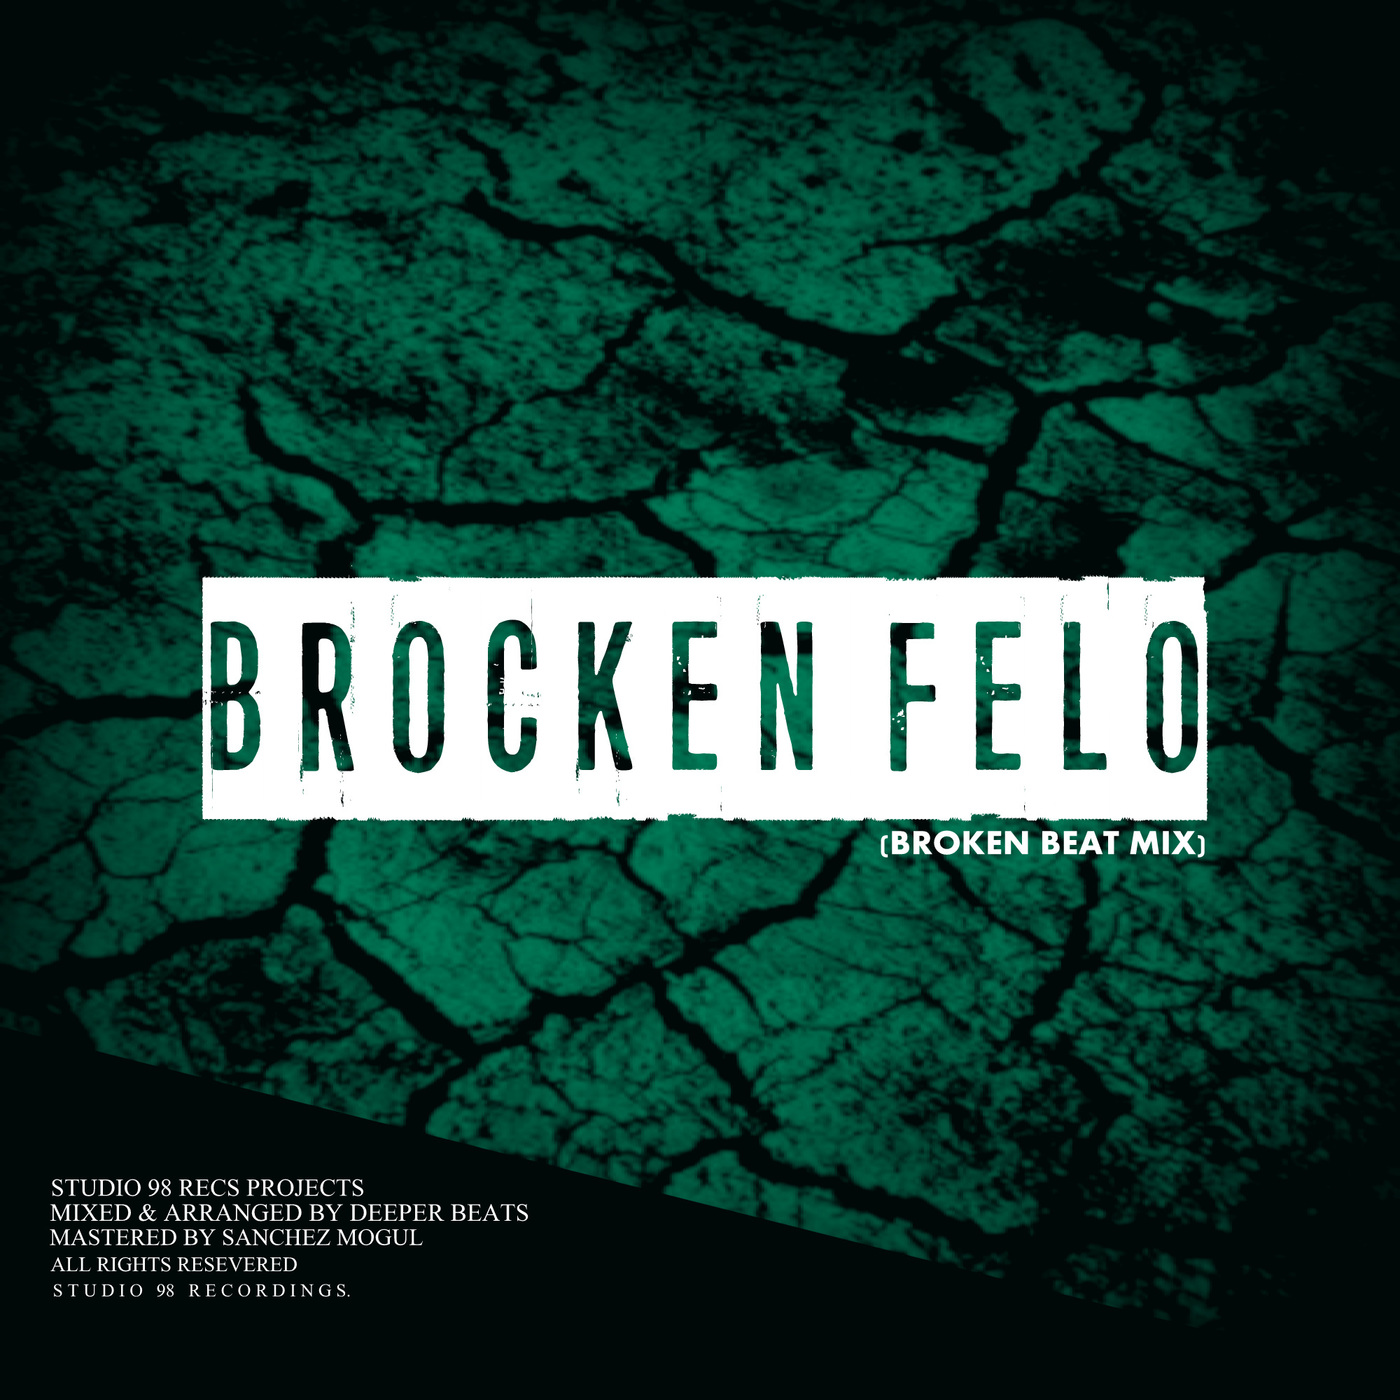 Studio 98 Recs Projects - Broken Felo (Broken Beat Mix) / Studio 98 Recordings